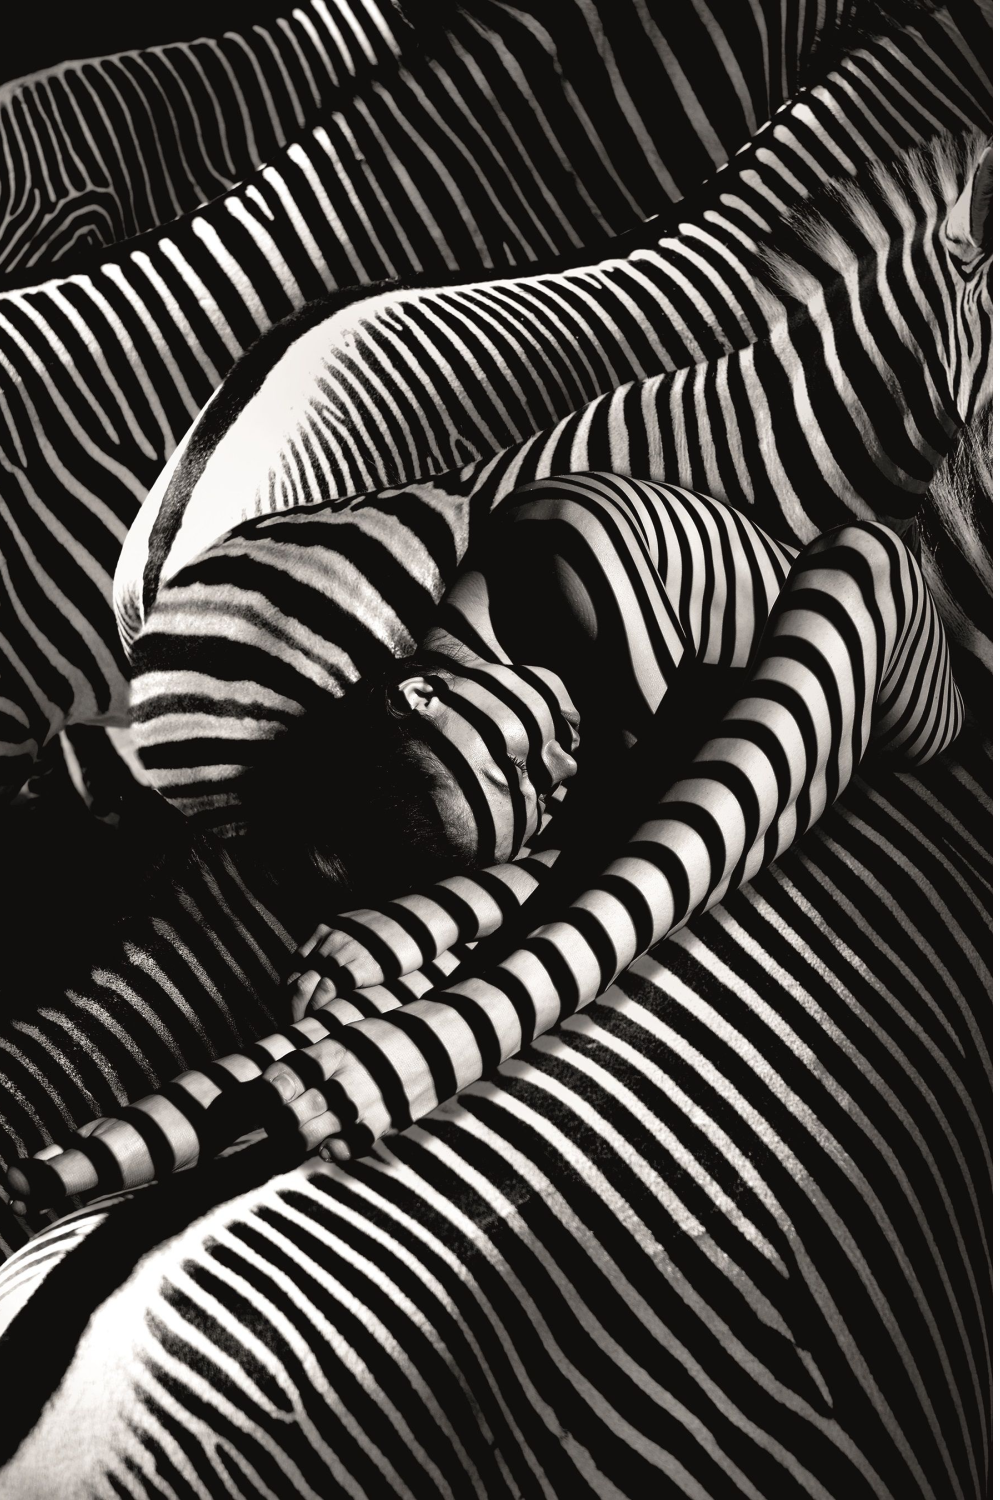 Contemporary Photographic Artwork | Andrew Martin Riding A Zebra | Oroa.com